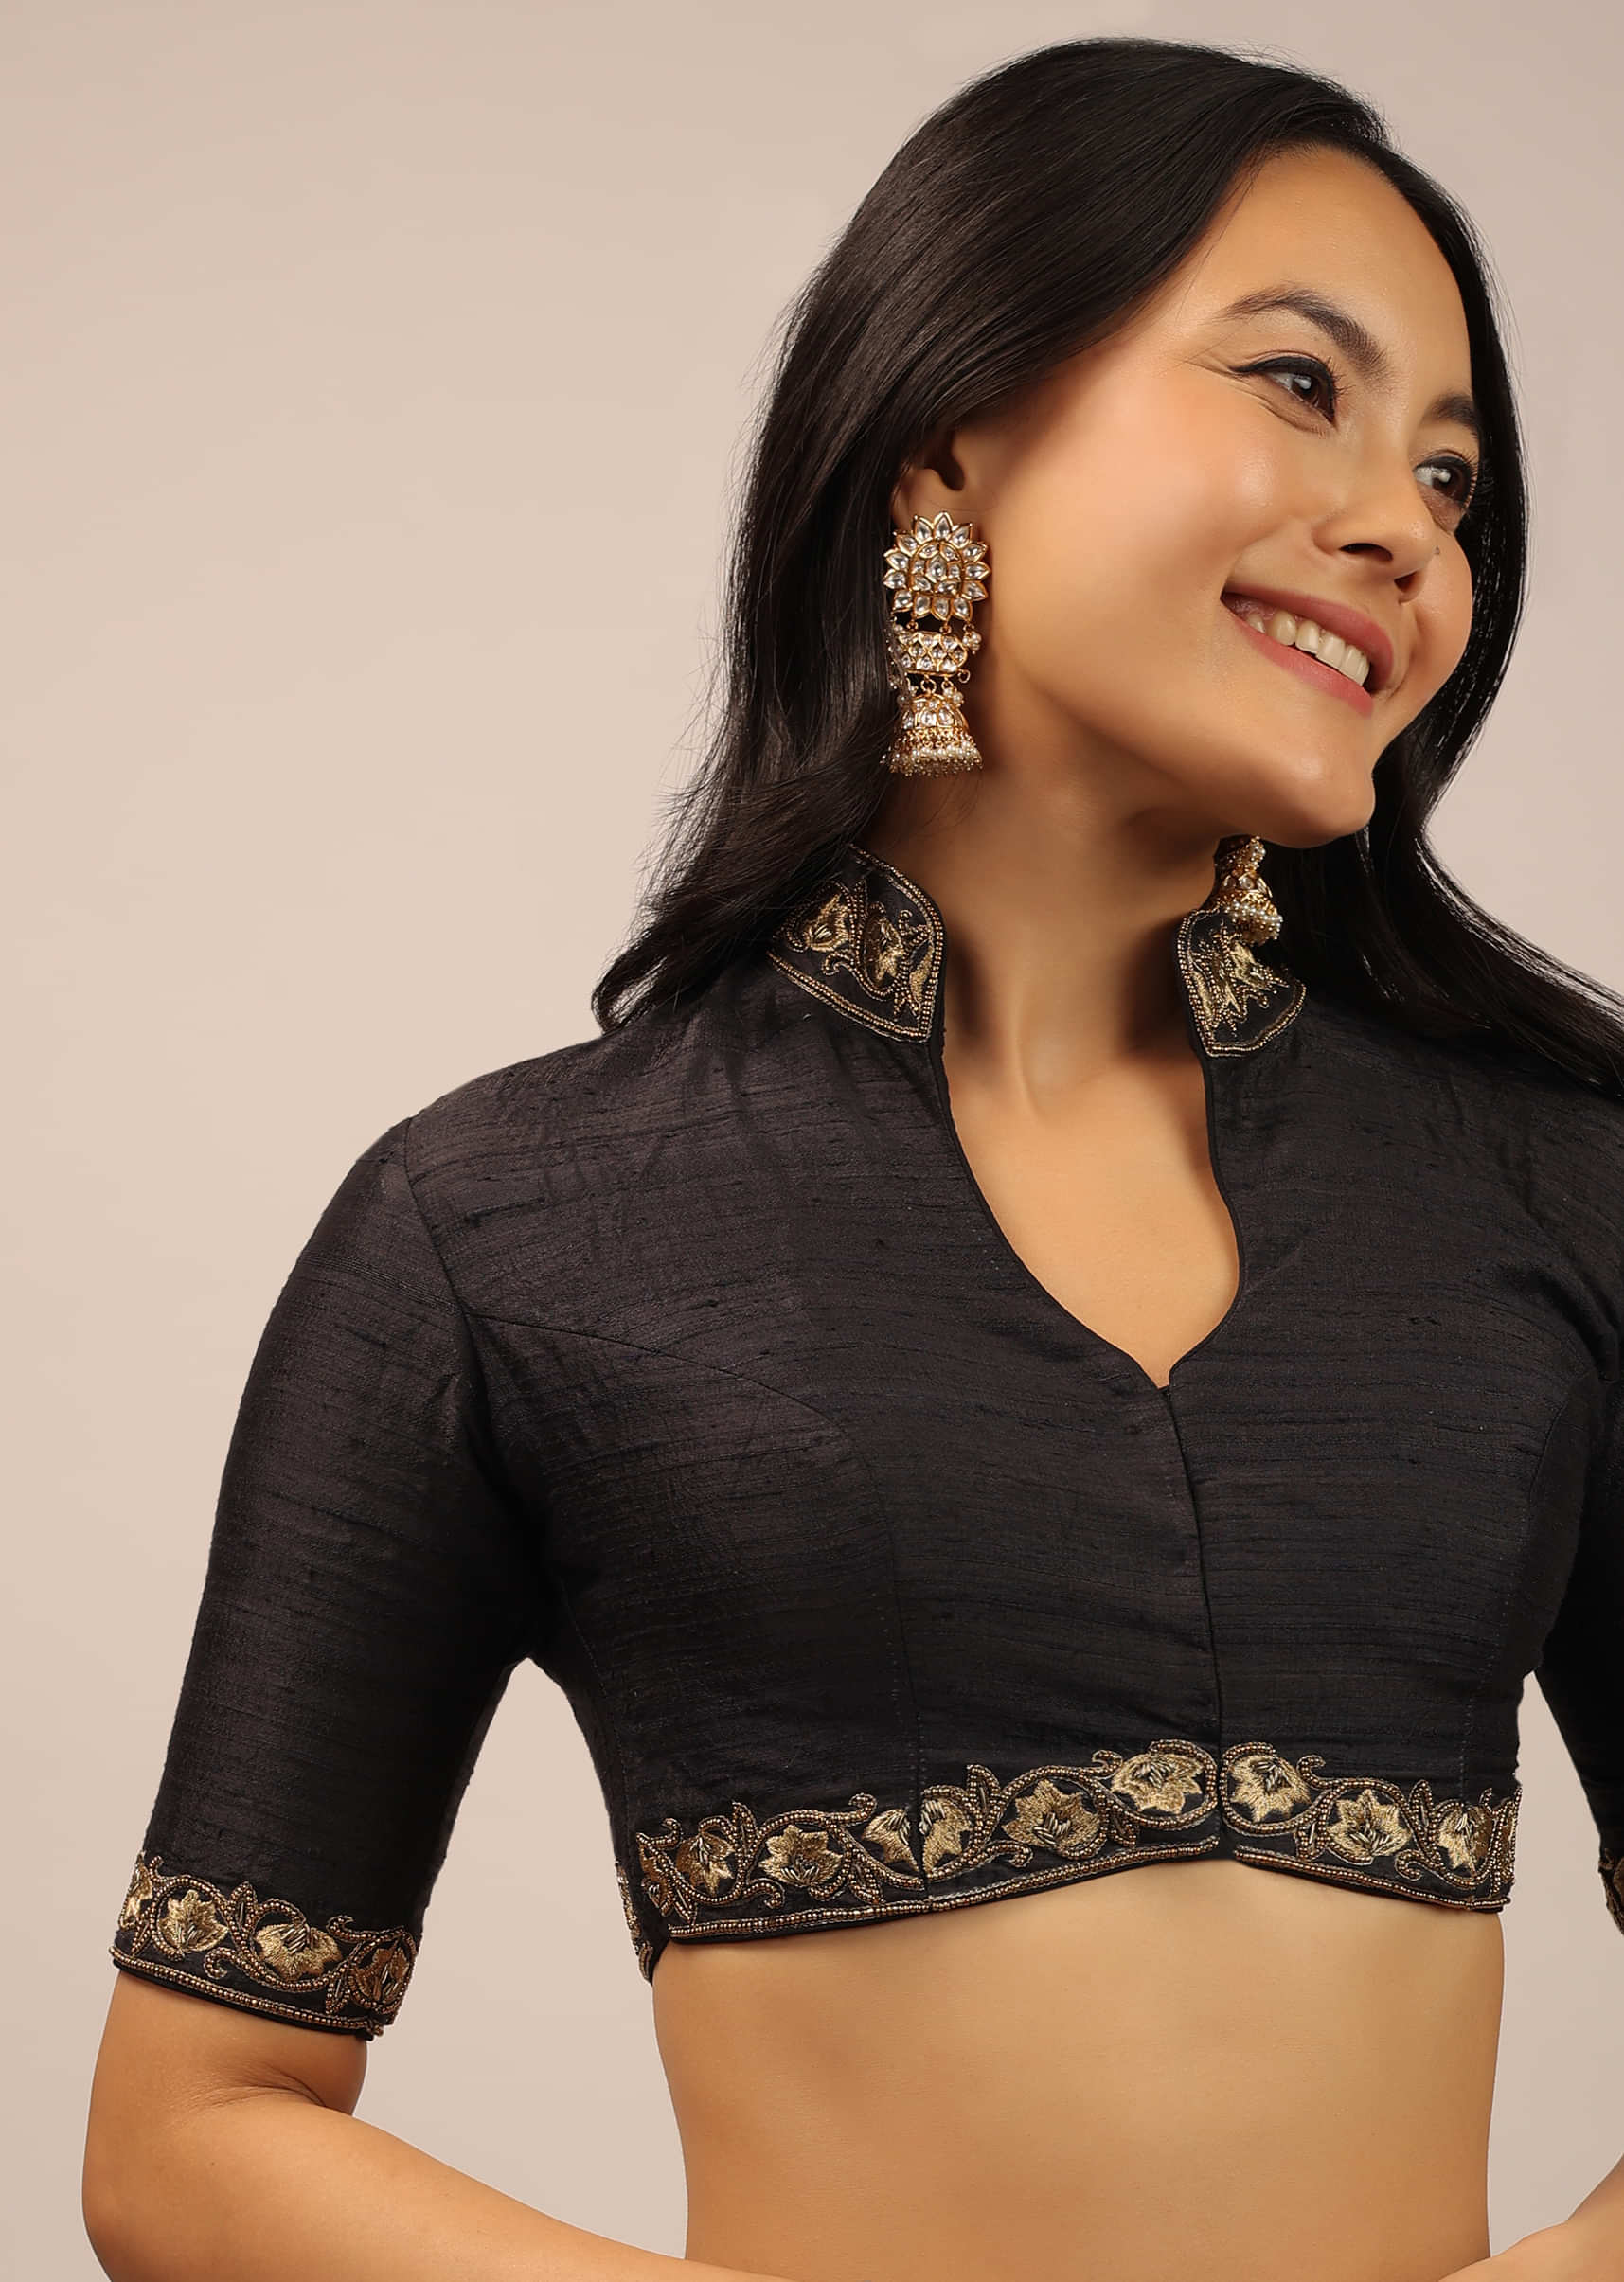 Latest Saree Blouse Designs: Buy Indian Saree Blouses Online at Kalki ...